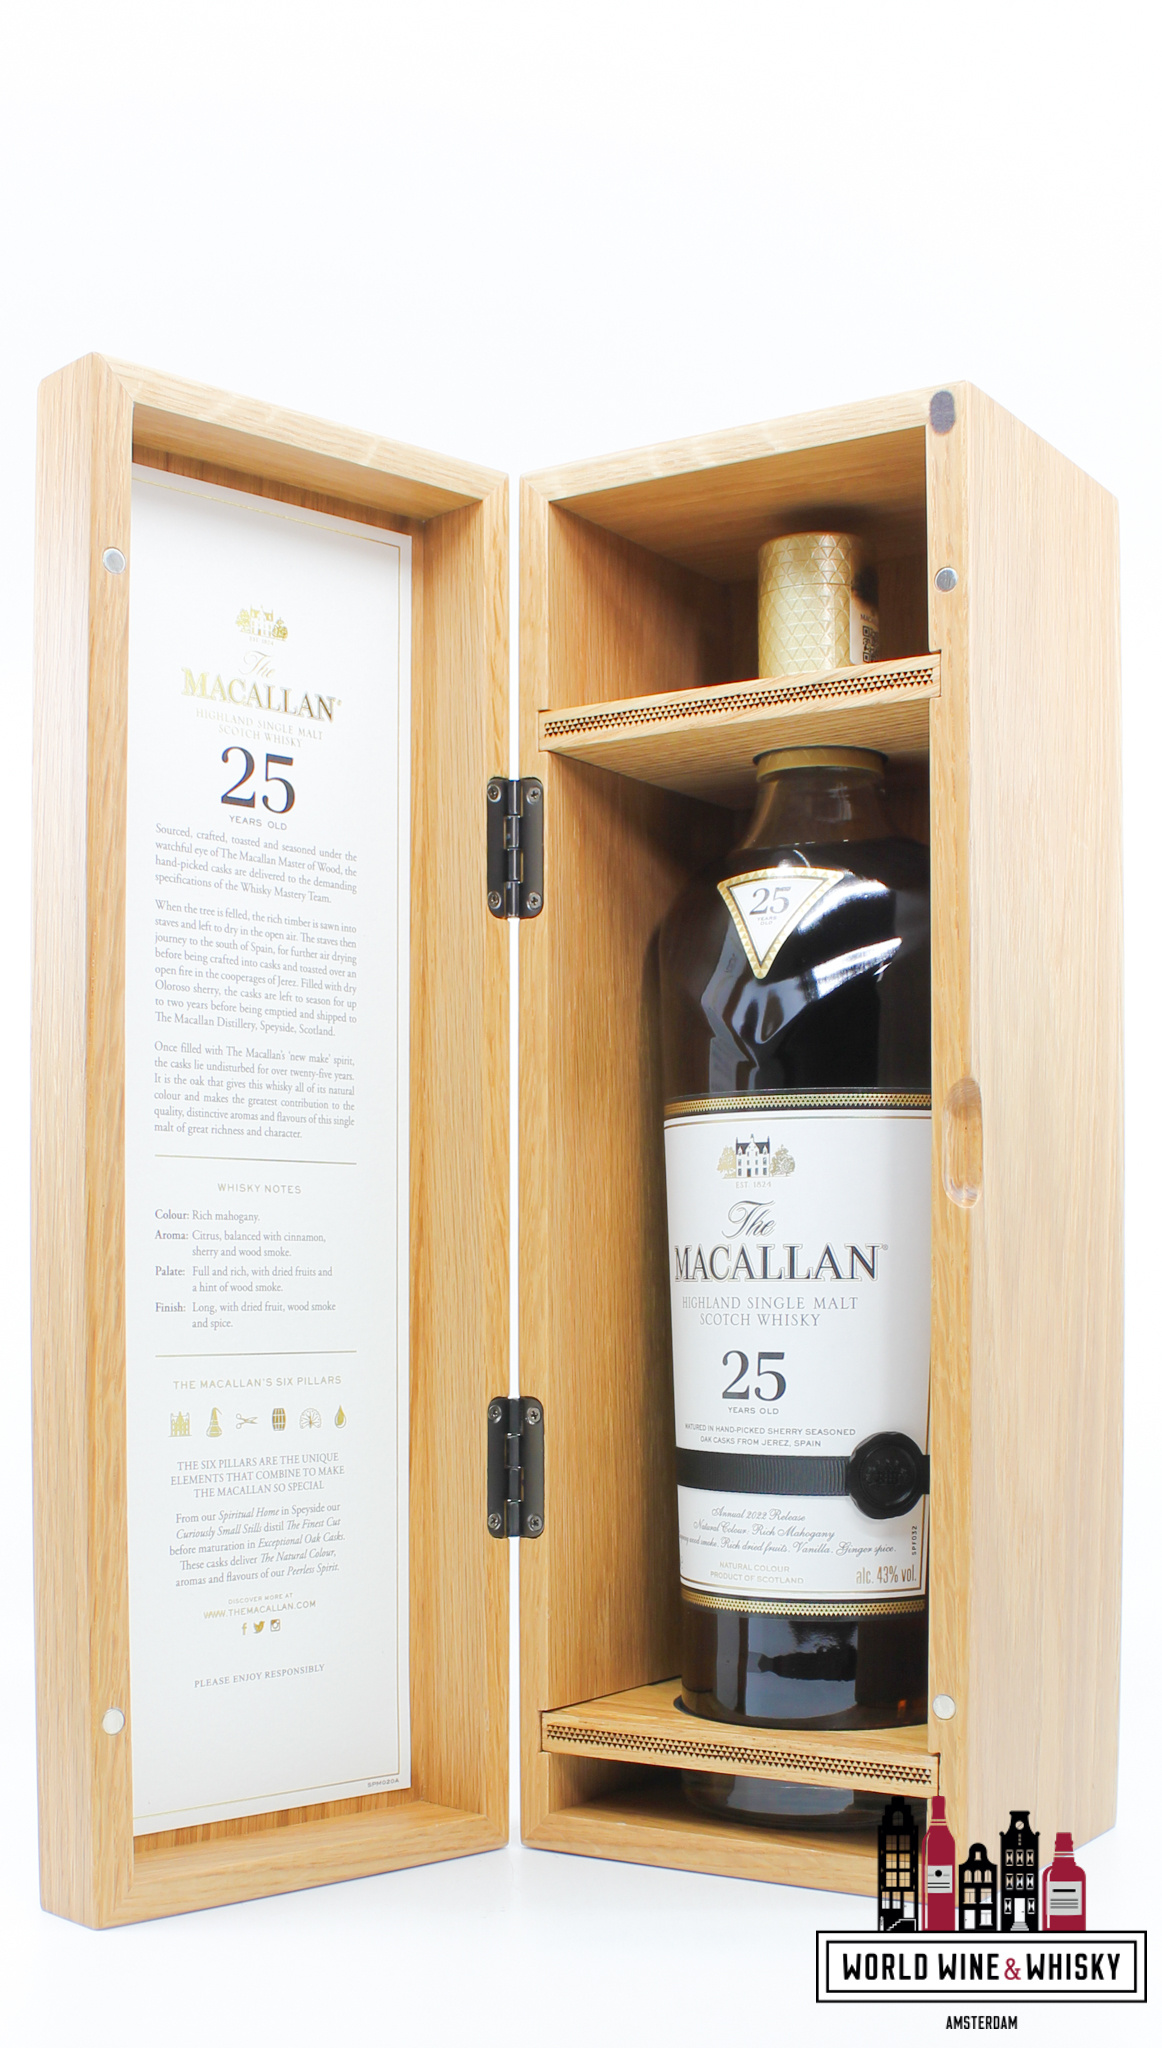 Macallan Macallan 25 Years Old - Sherry Oak Casks - Annual 2022 Release 43% (in luxury wooden case)